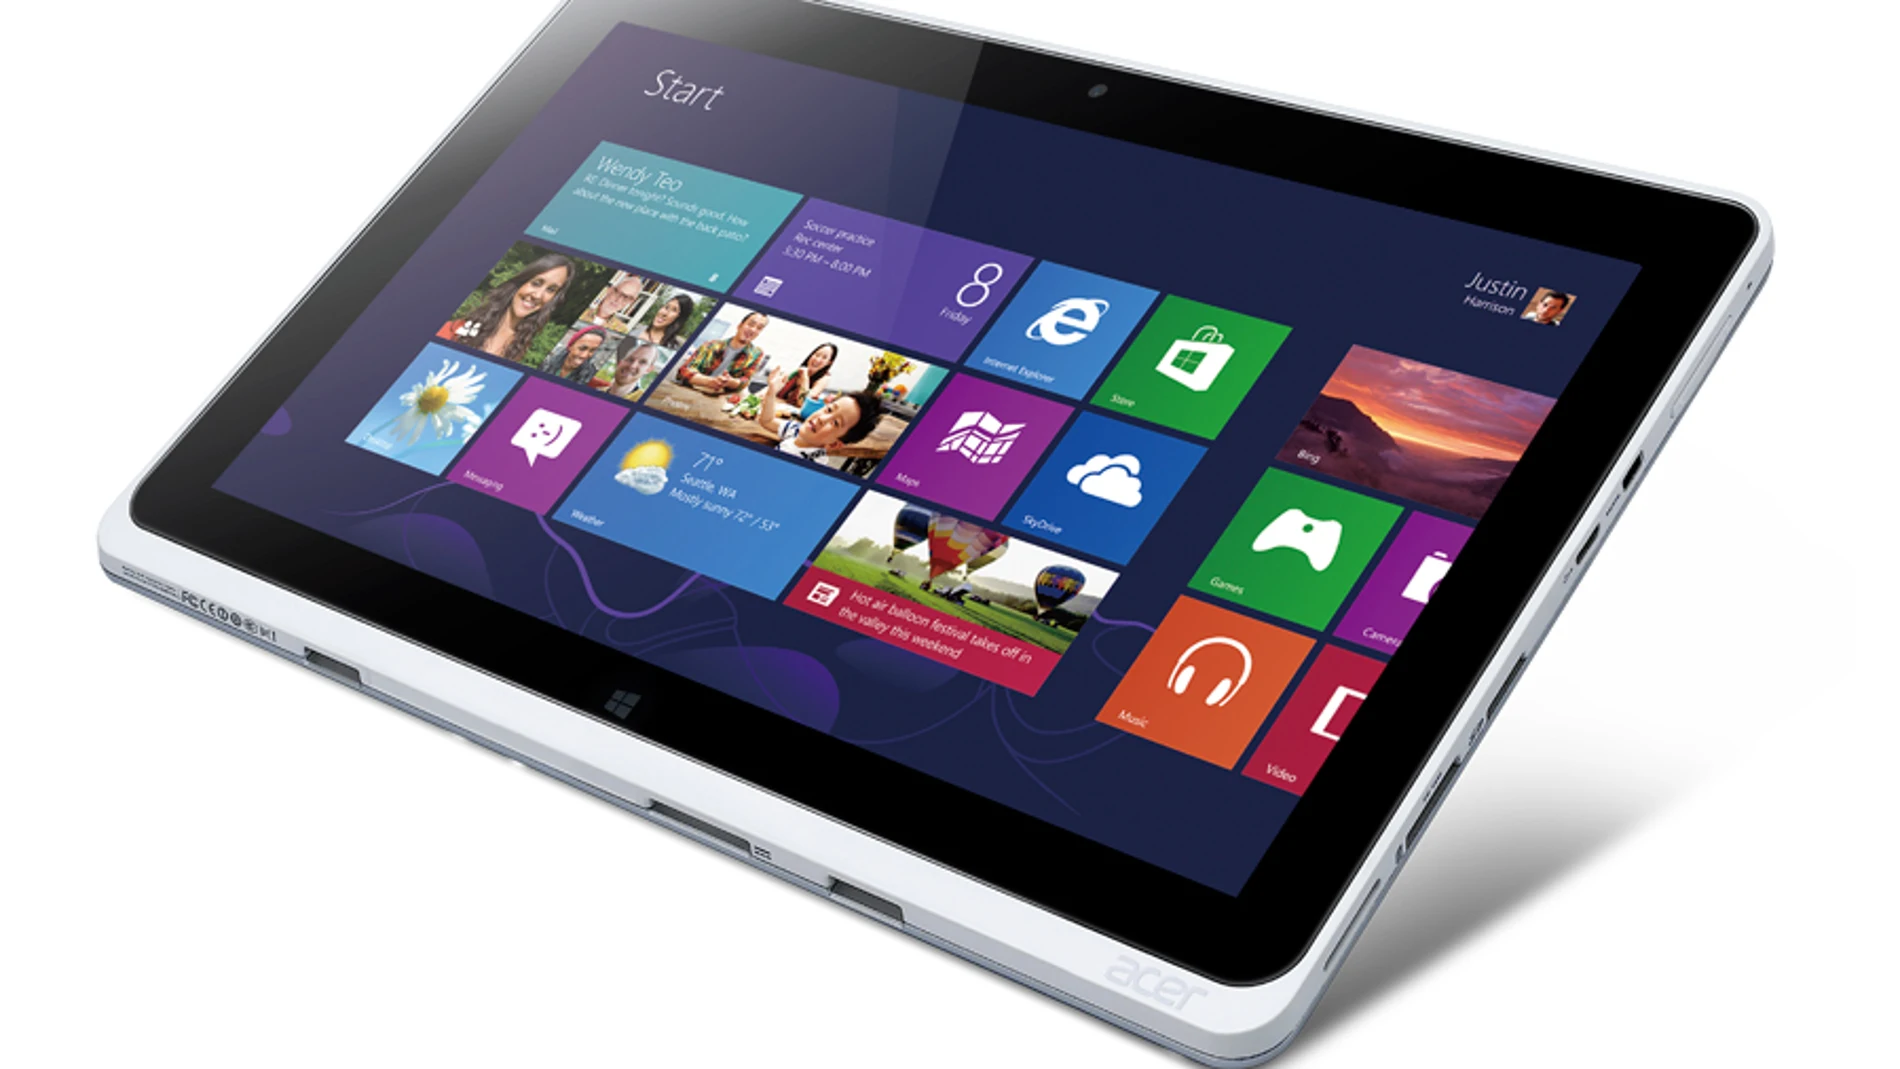 Los tablets Iconia de Acer, con Windows 8, más potentes y versátiles